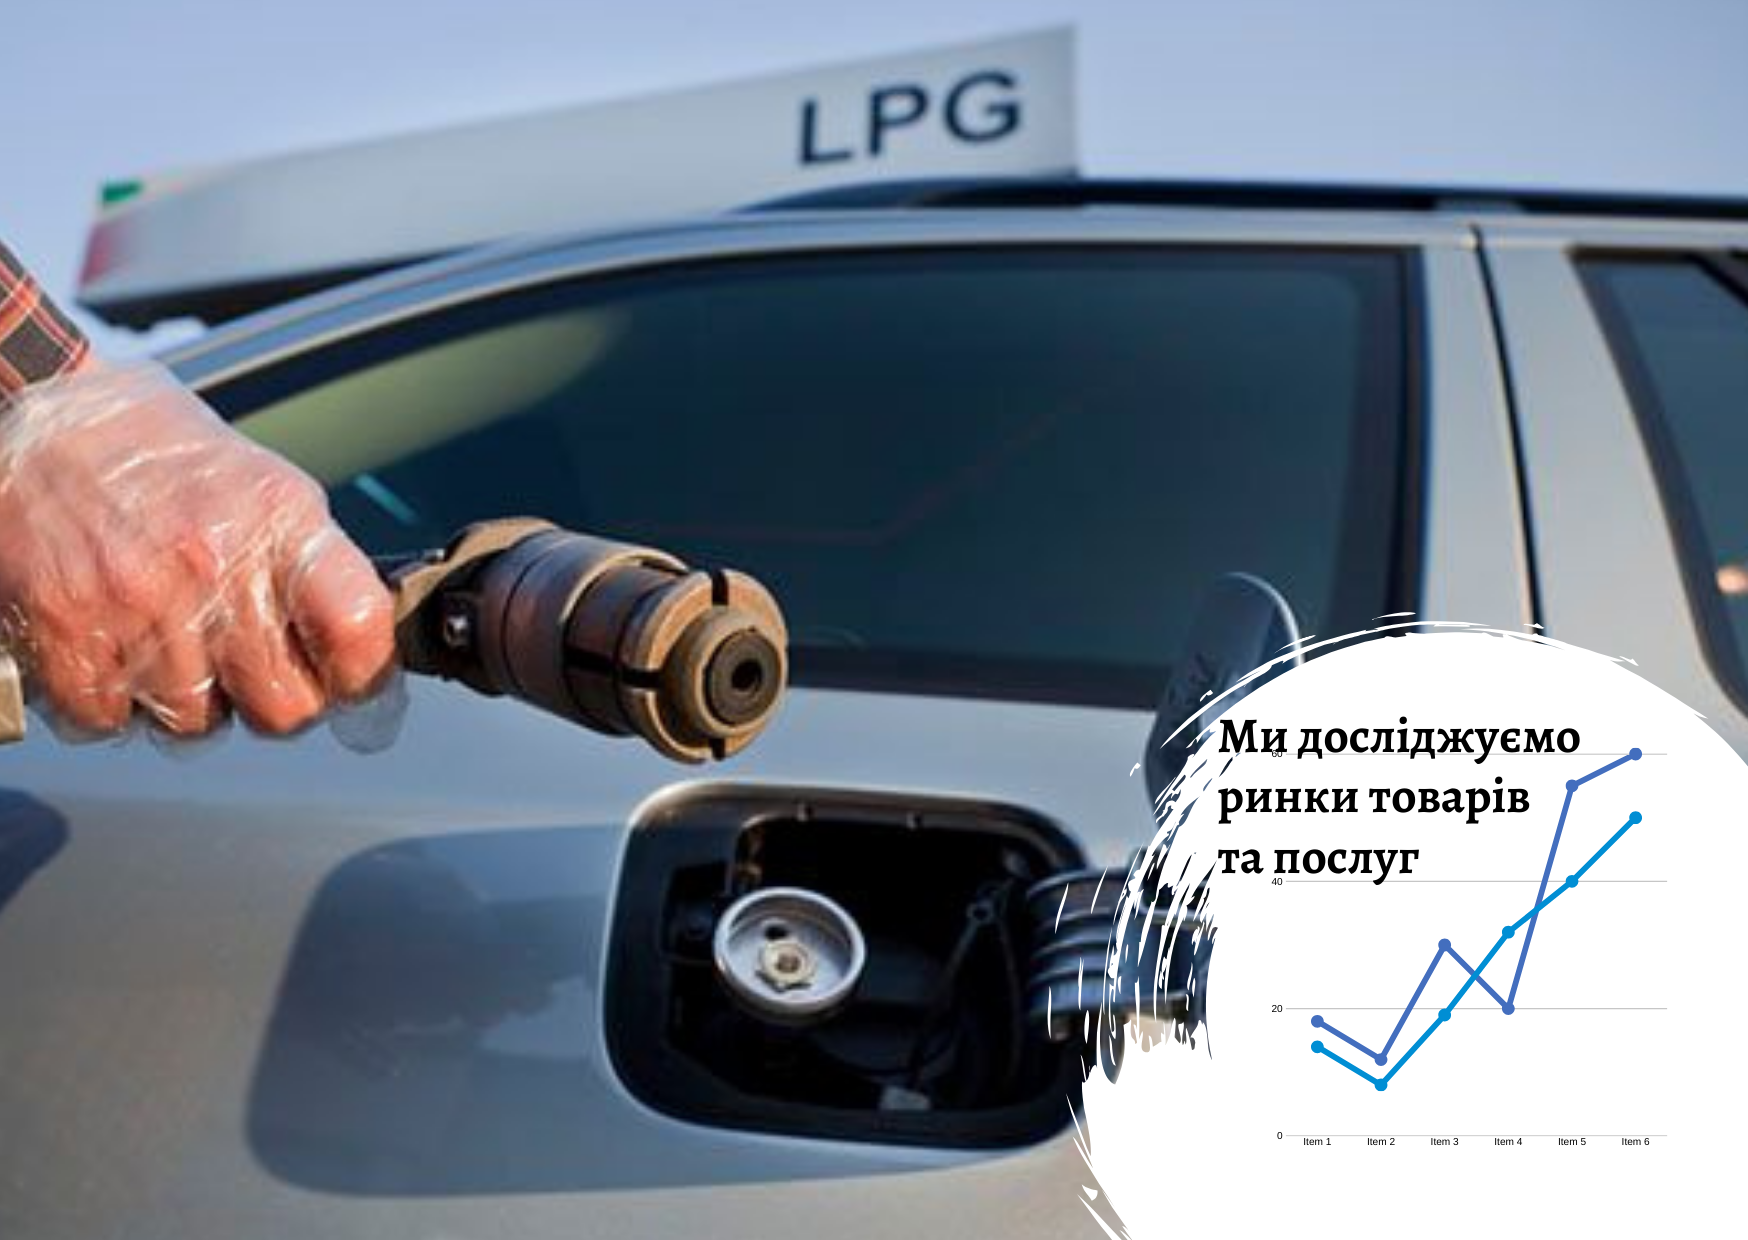 Рынок сжиженного нефтяного газа (LPG) в Украине и ЕС: внутренний и внешнеторговый потенциал